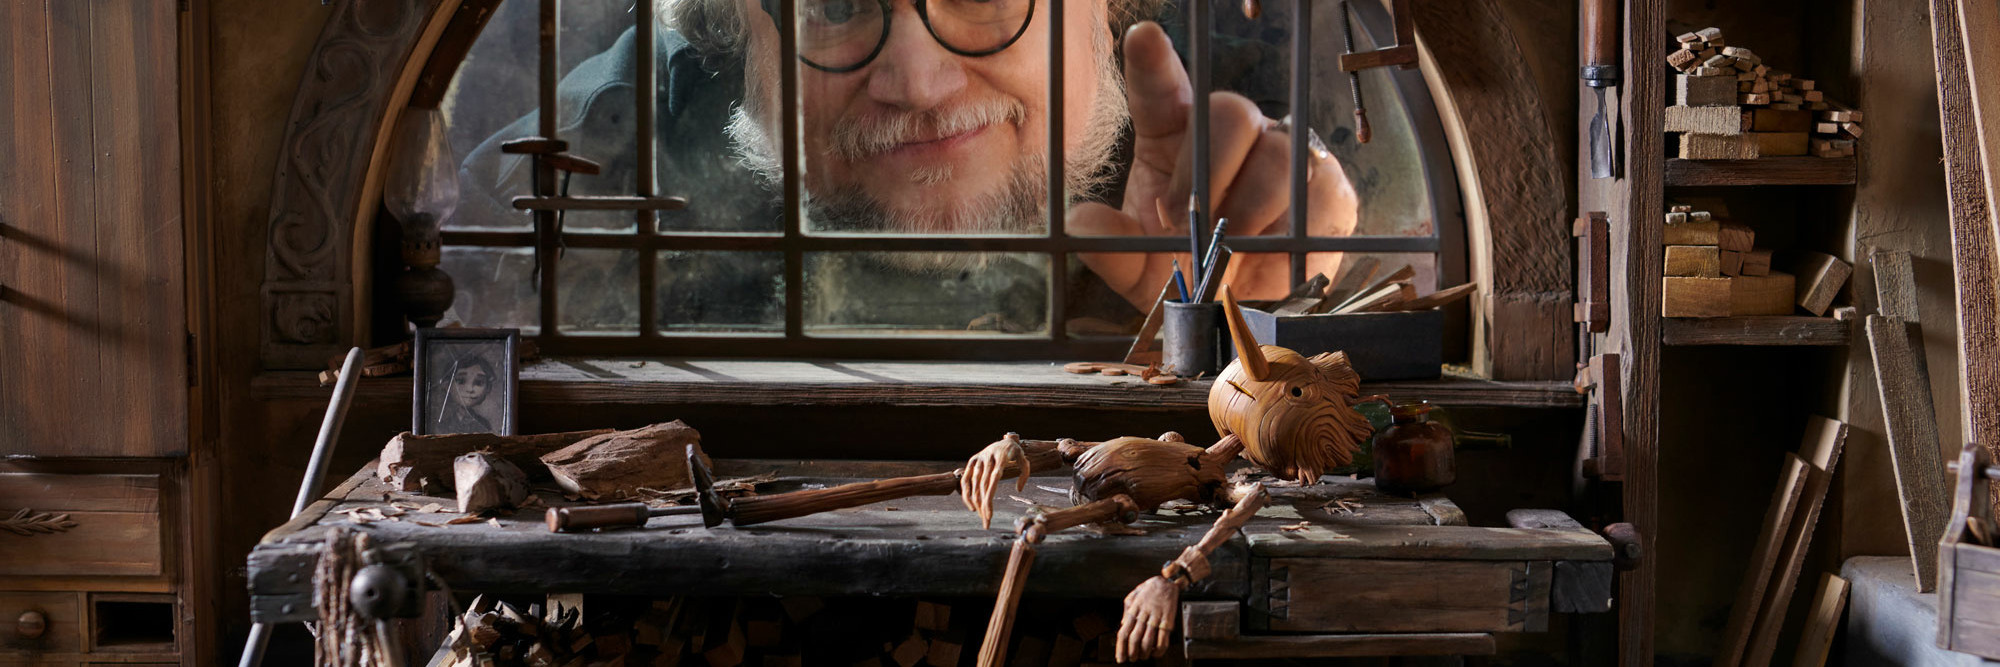 Guillermo del Toro en el set de filmación de Pinocho de Guillermo del Toro, 2022. Foto por cortesía de Jason Schmidt/Netflix